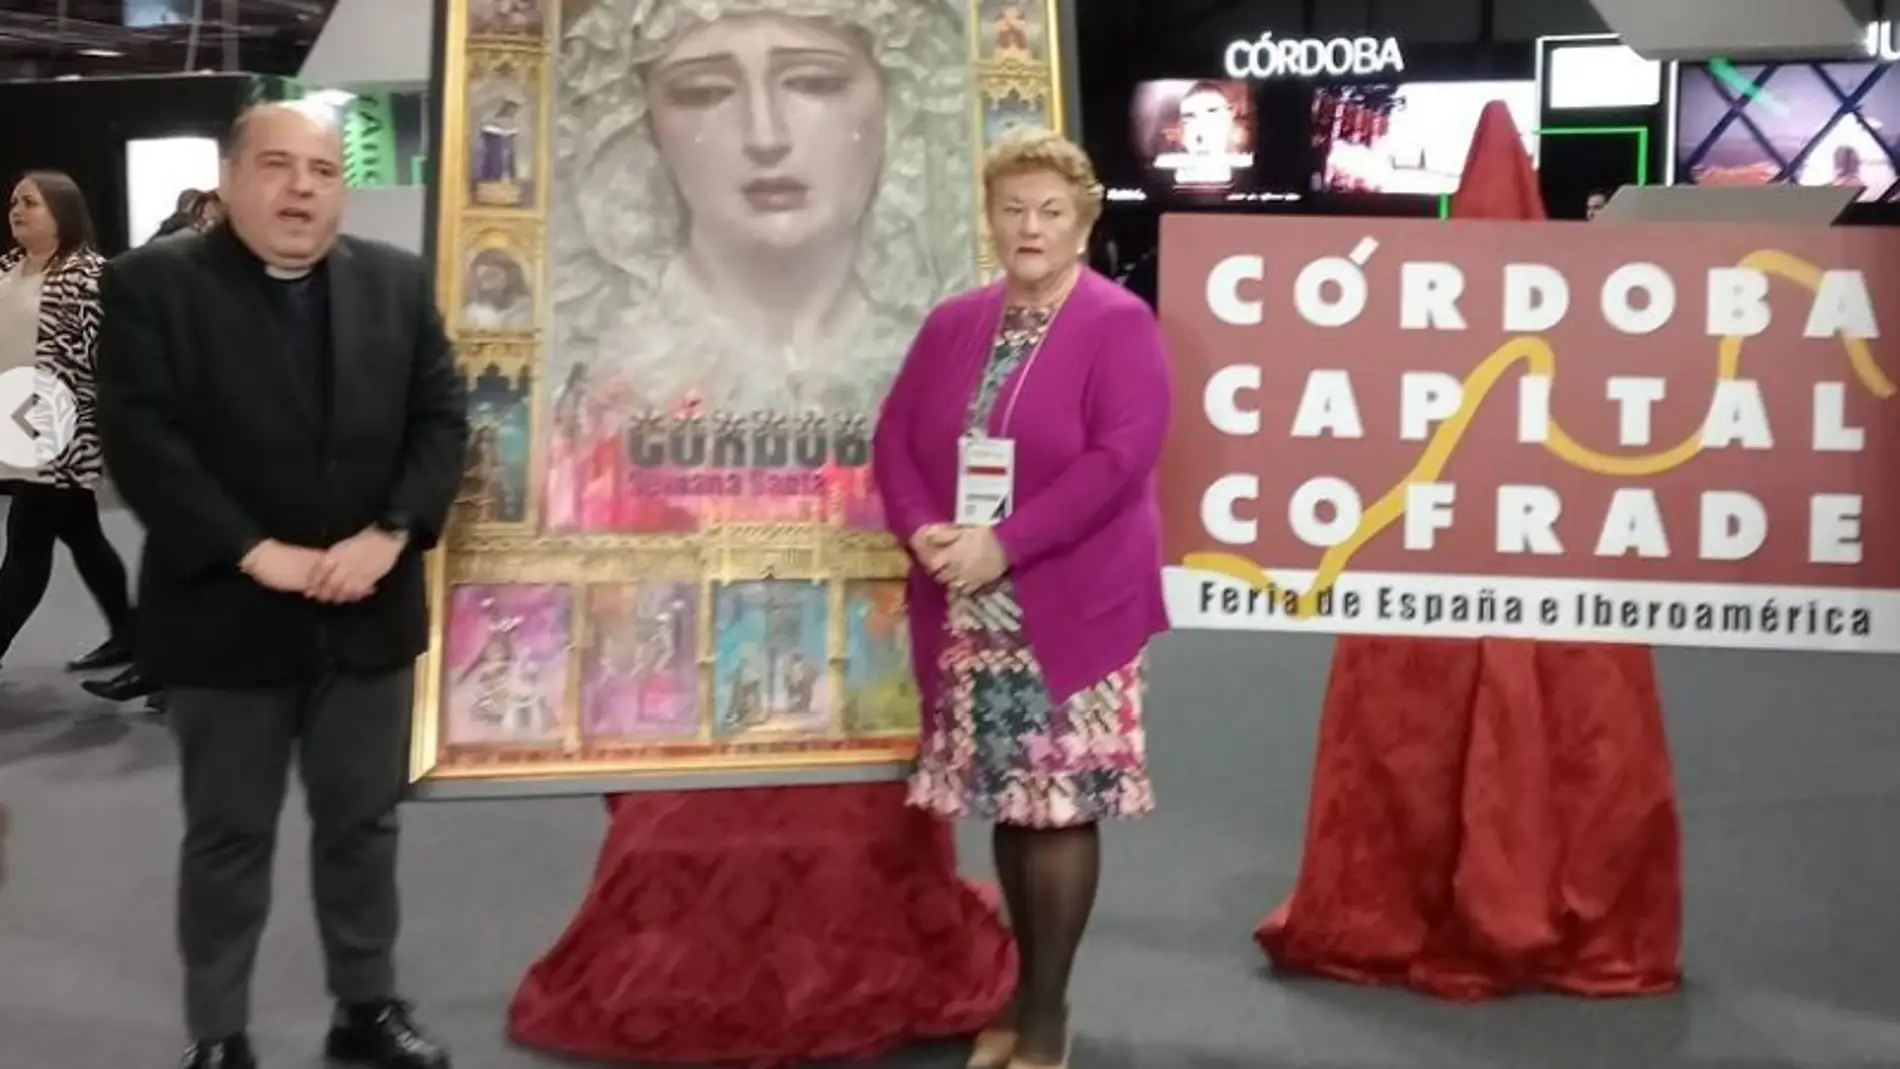 La Agrupación de Cofradías organiza una exposición dedicada a la cartelería pictórica de Semana Santa